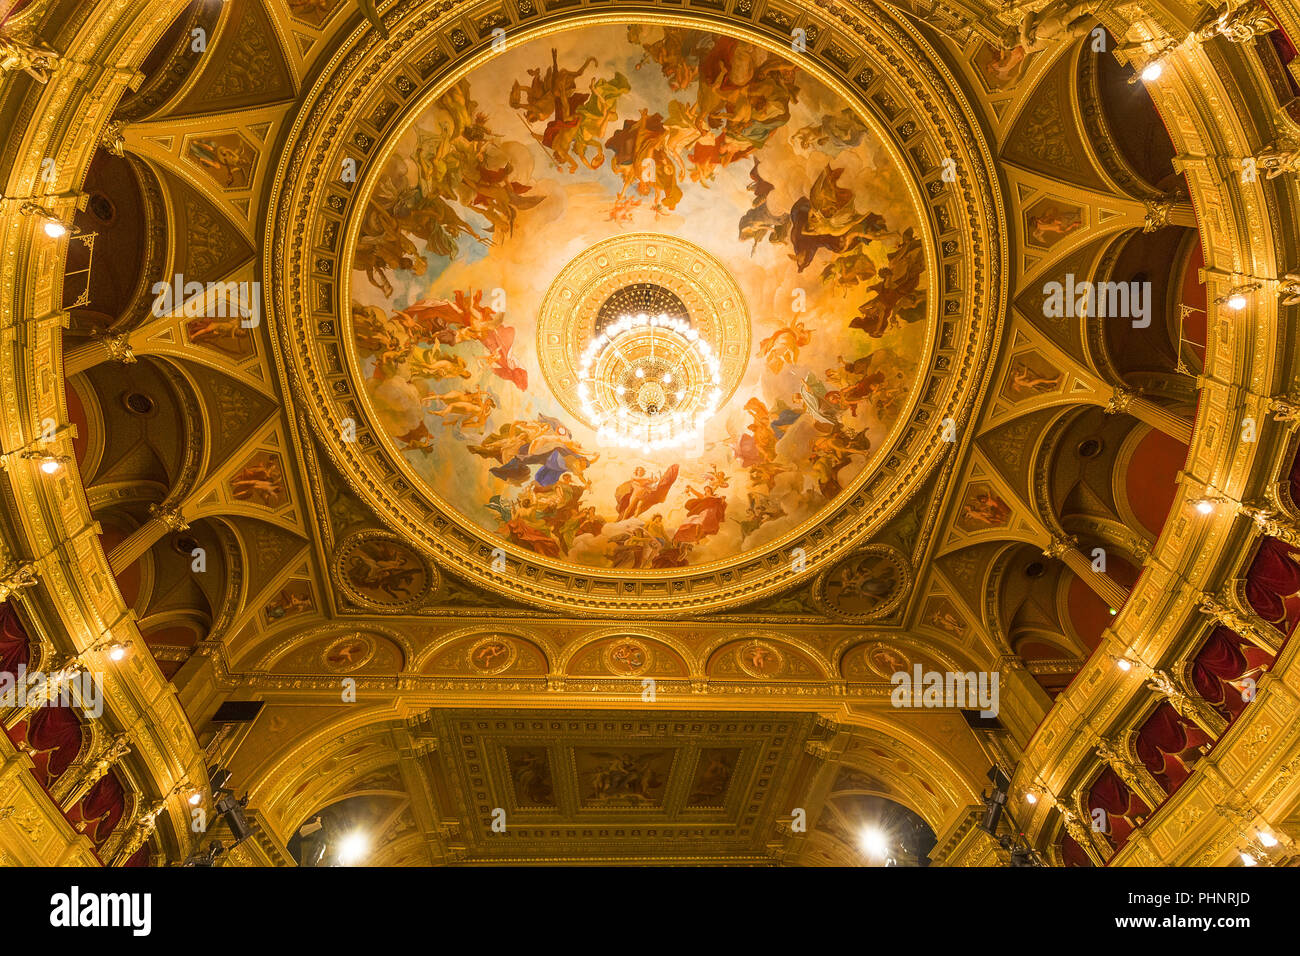 Vienne,Autriche-20 mai 2019 : Intérieur de l'hôtel de l'Opéra de Vienne à l'intérieur Banque D'Images